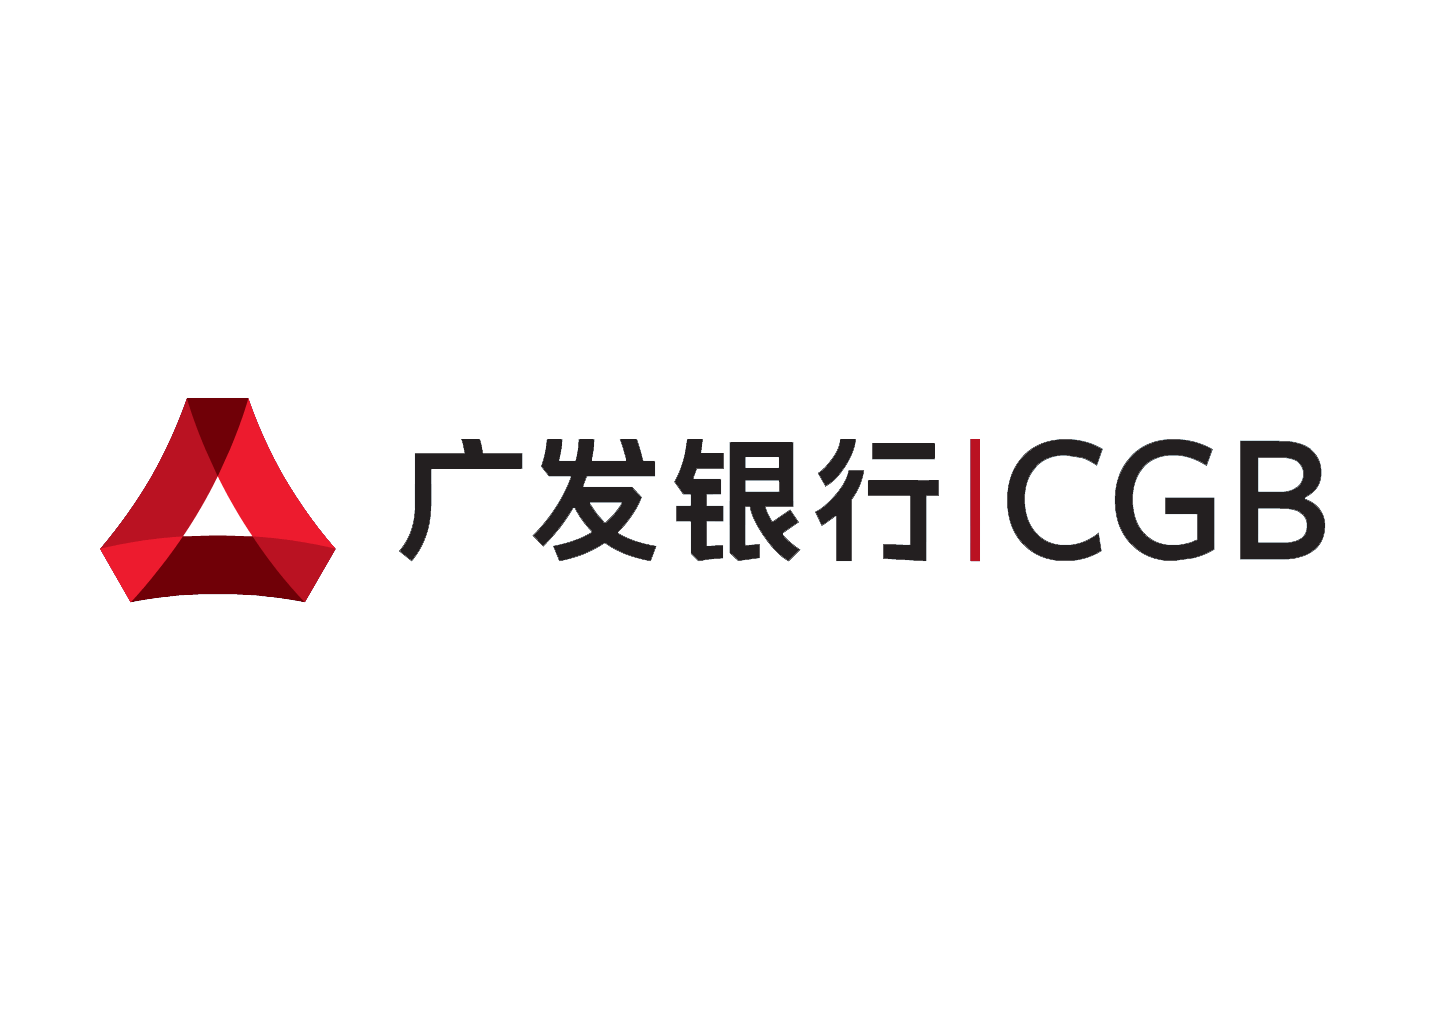 Chinese Bank Logo - Guangfa Bank logo | Logok